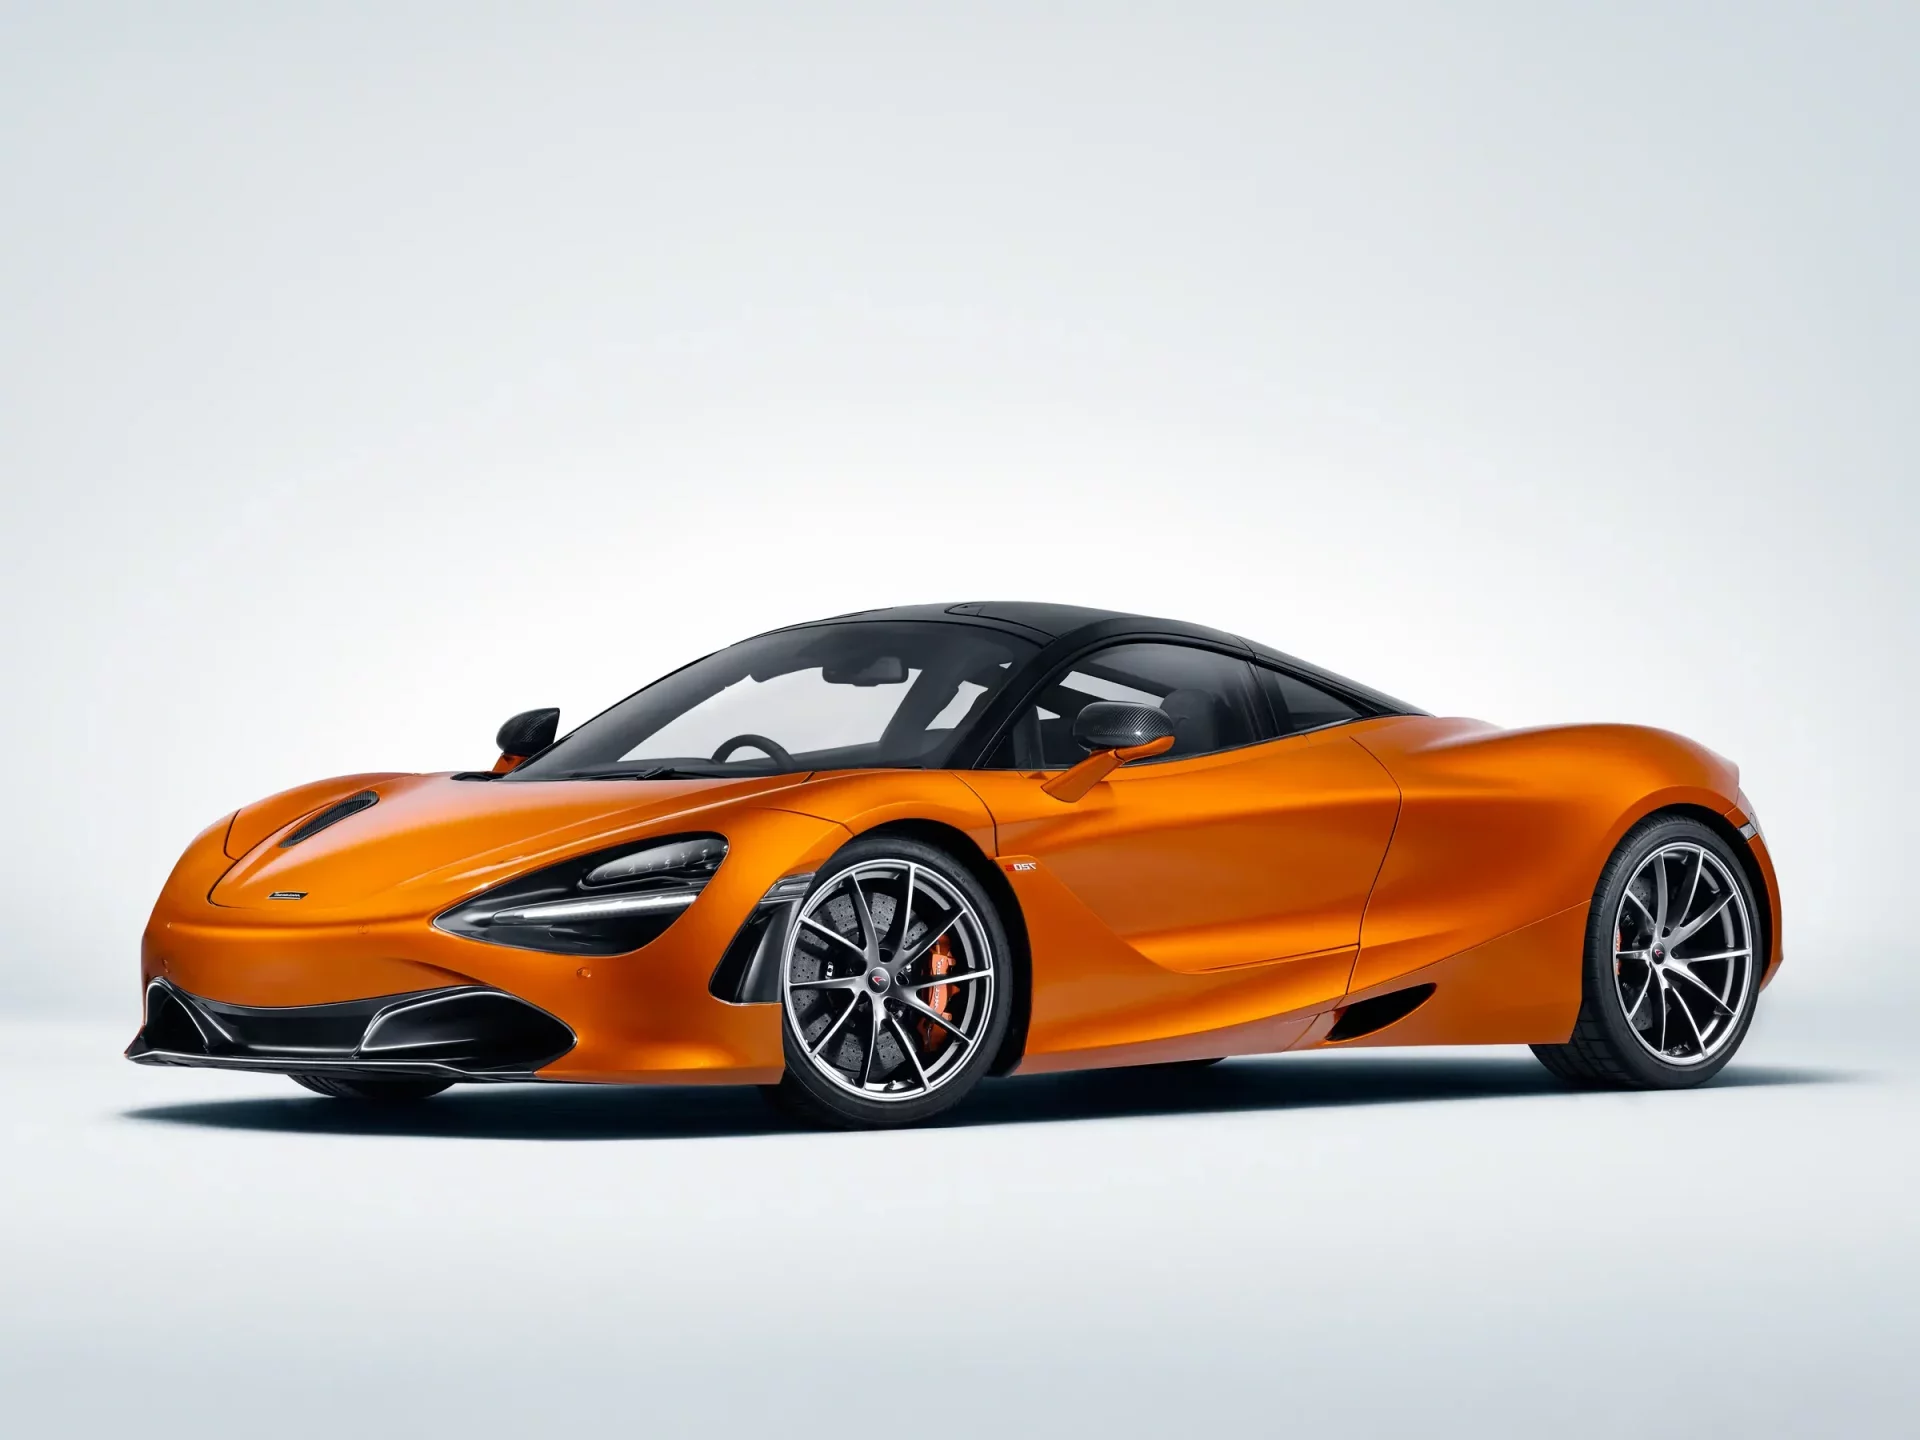 McLaren 720S image